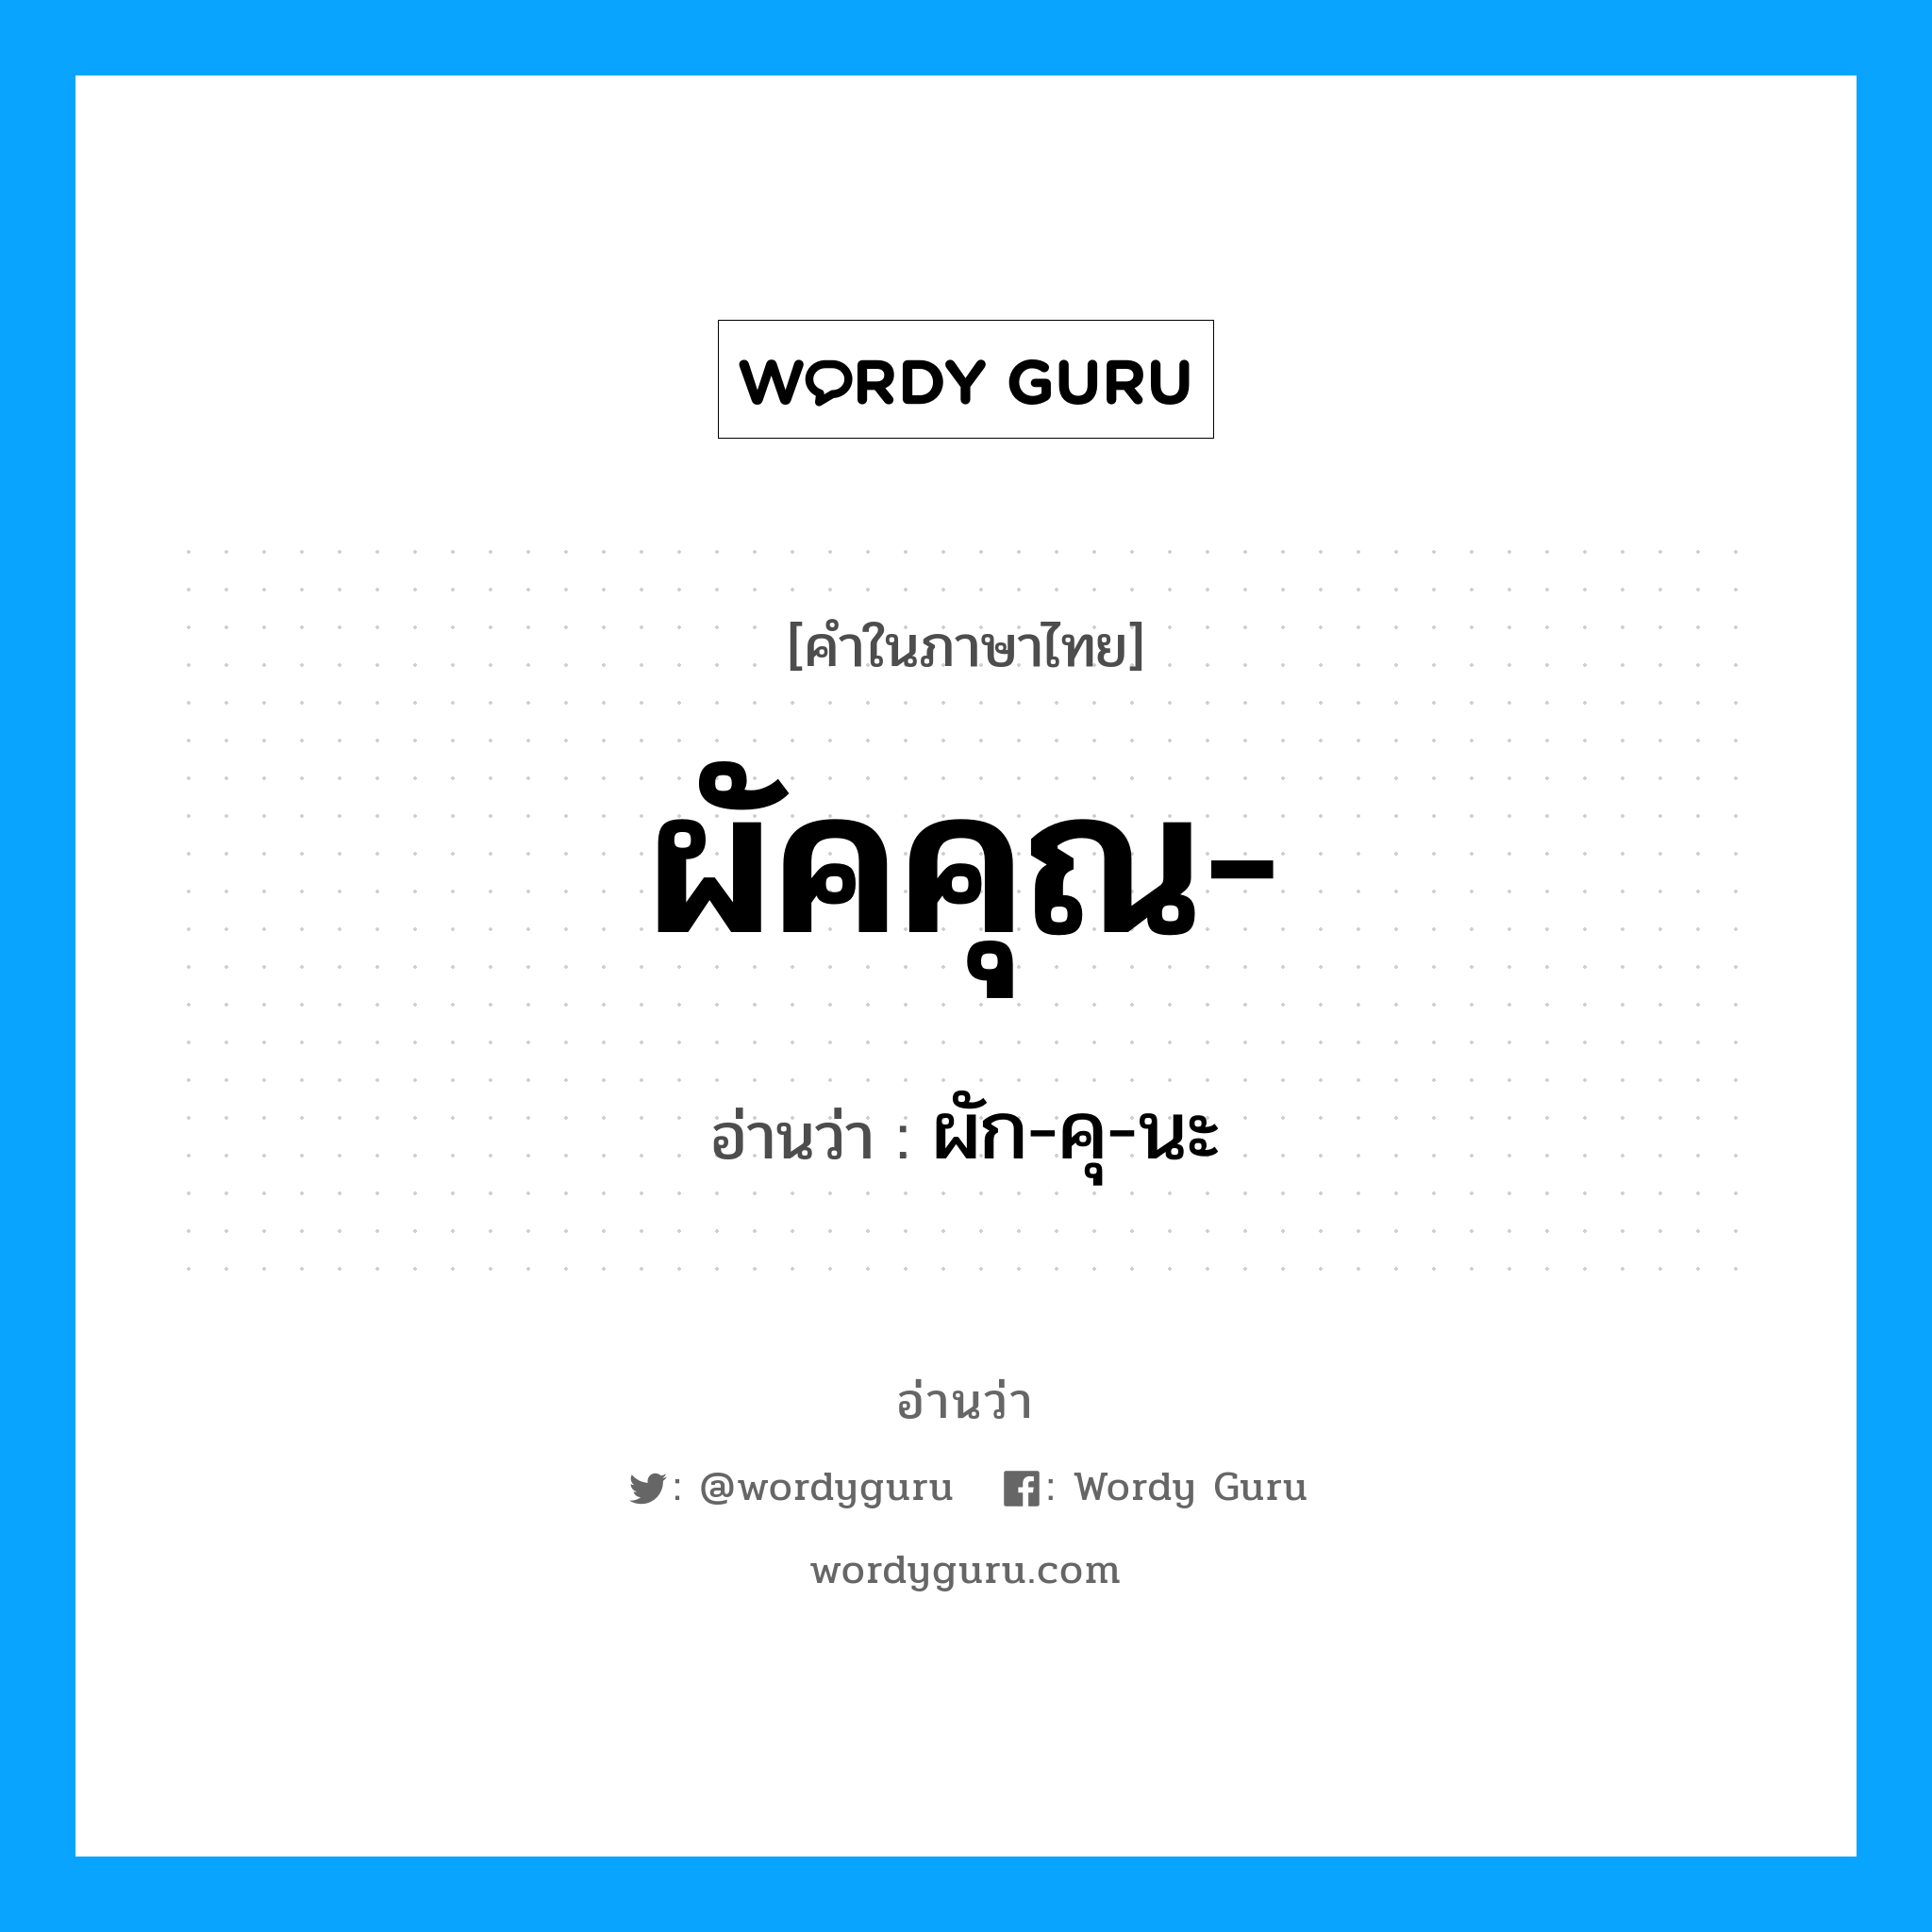 ผัก-คุ-นะ เป็นคำอ่านของคำไหน?, คำในภาษาไทย ผัก-คุ-นะ อ่านว่า ผัคคุณ-